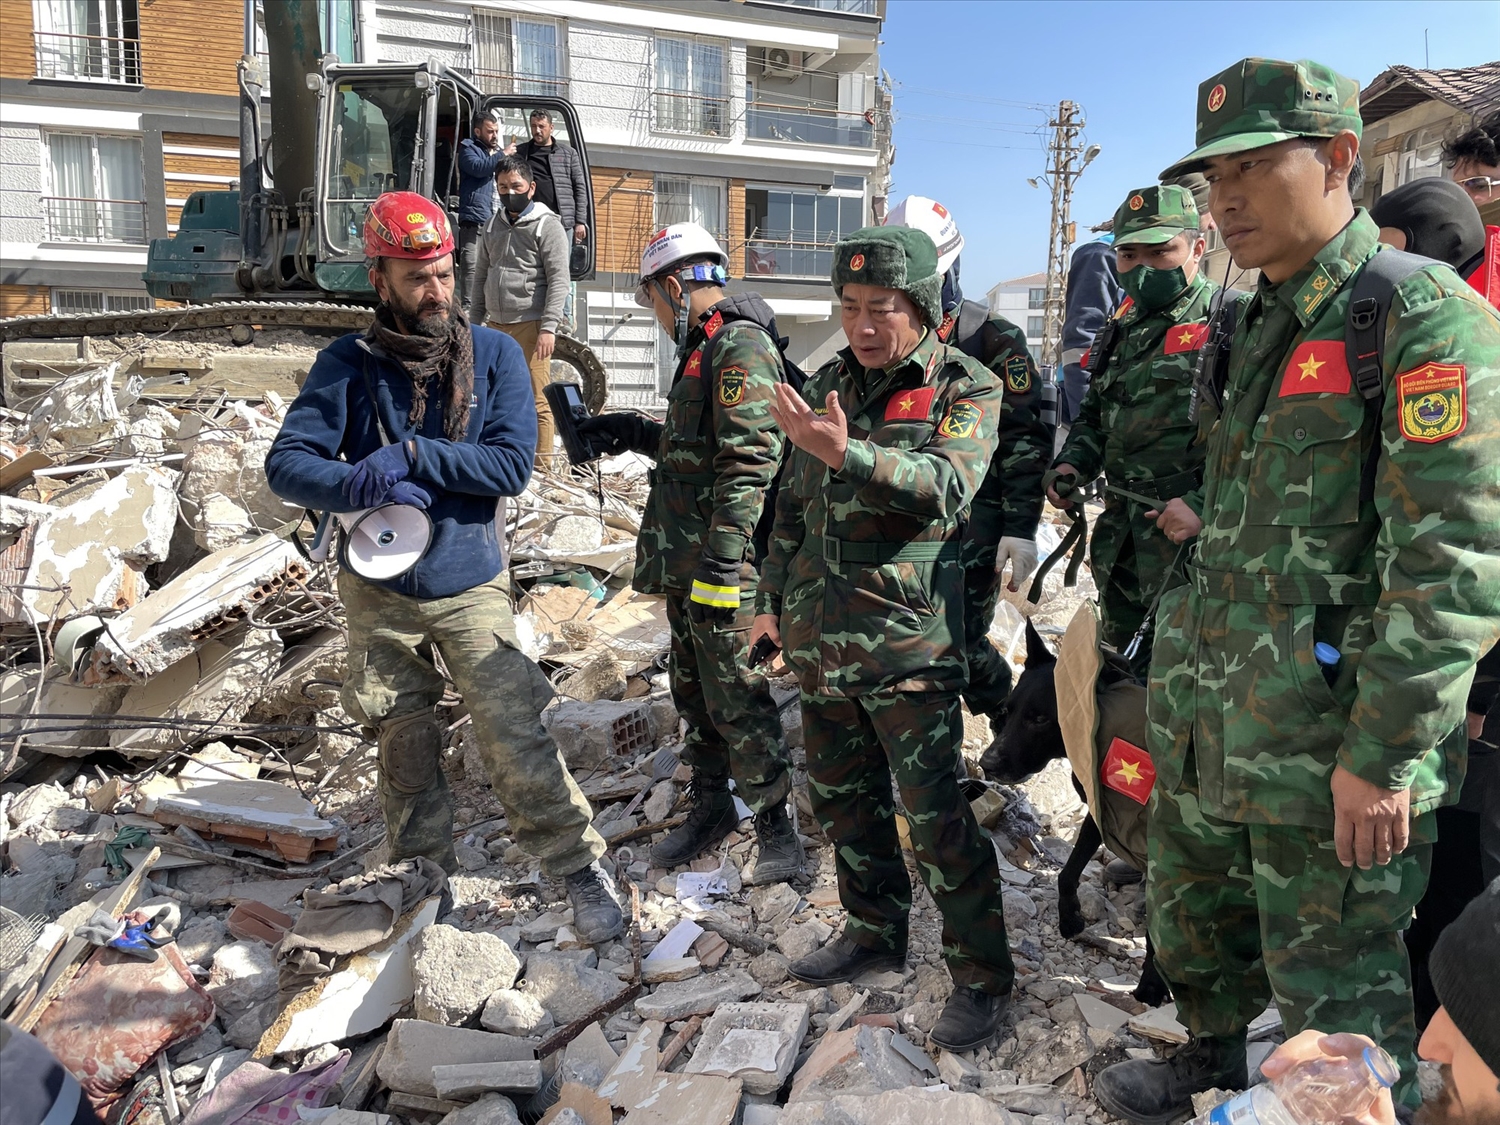 Đoàn công tác cứu hộ, cứu nạn của Quân đội nhân dân Việt Nam hỗ trợ tìm kiếm cứu nạn tại khu vực đường Rustem Tumer Pasa, Antakya, tỉnh Hatay, Thổ Nhĩ Kỳ. Ảnh: Báo Quân đội nhân dân